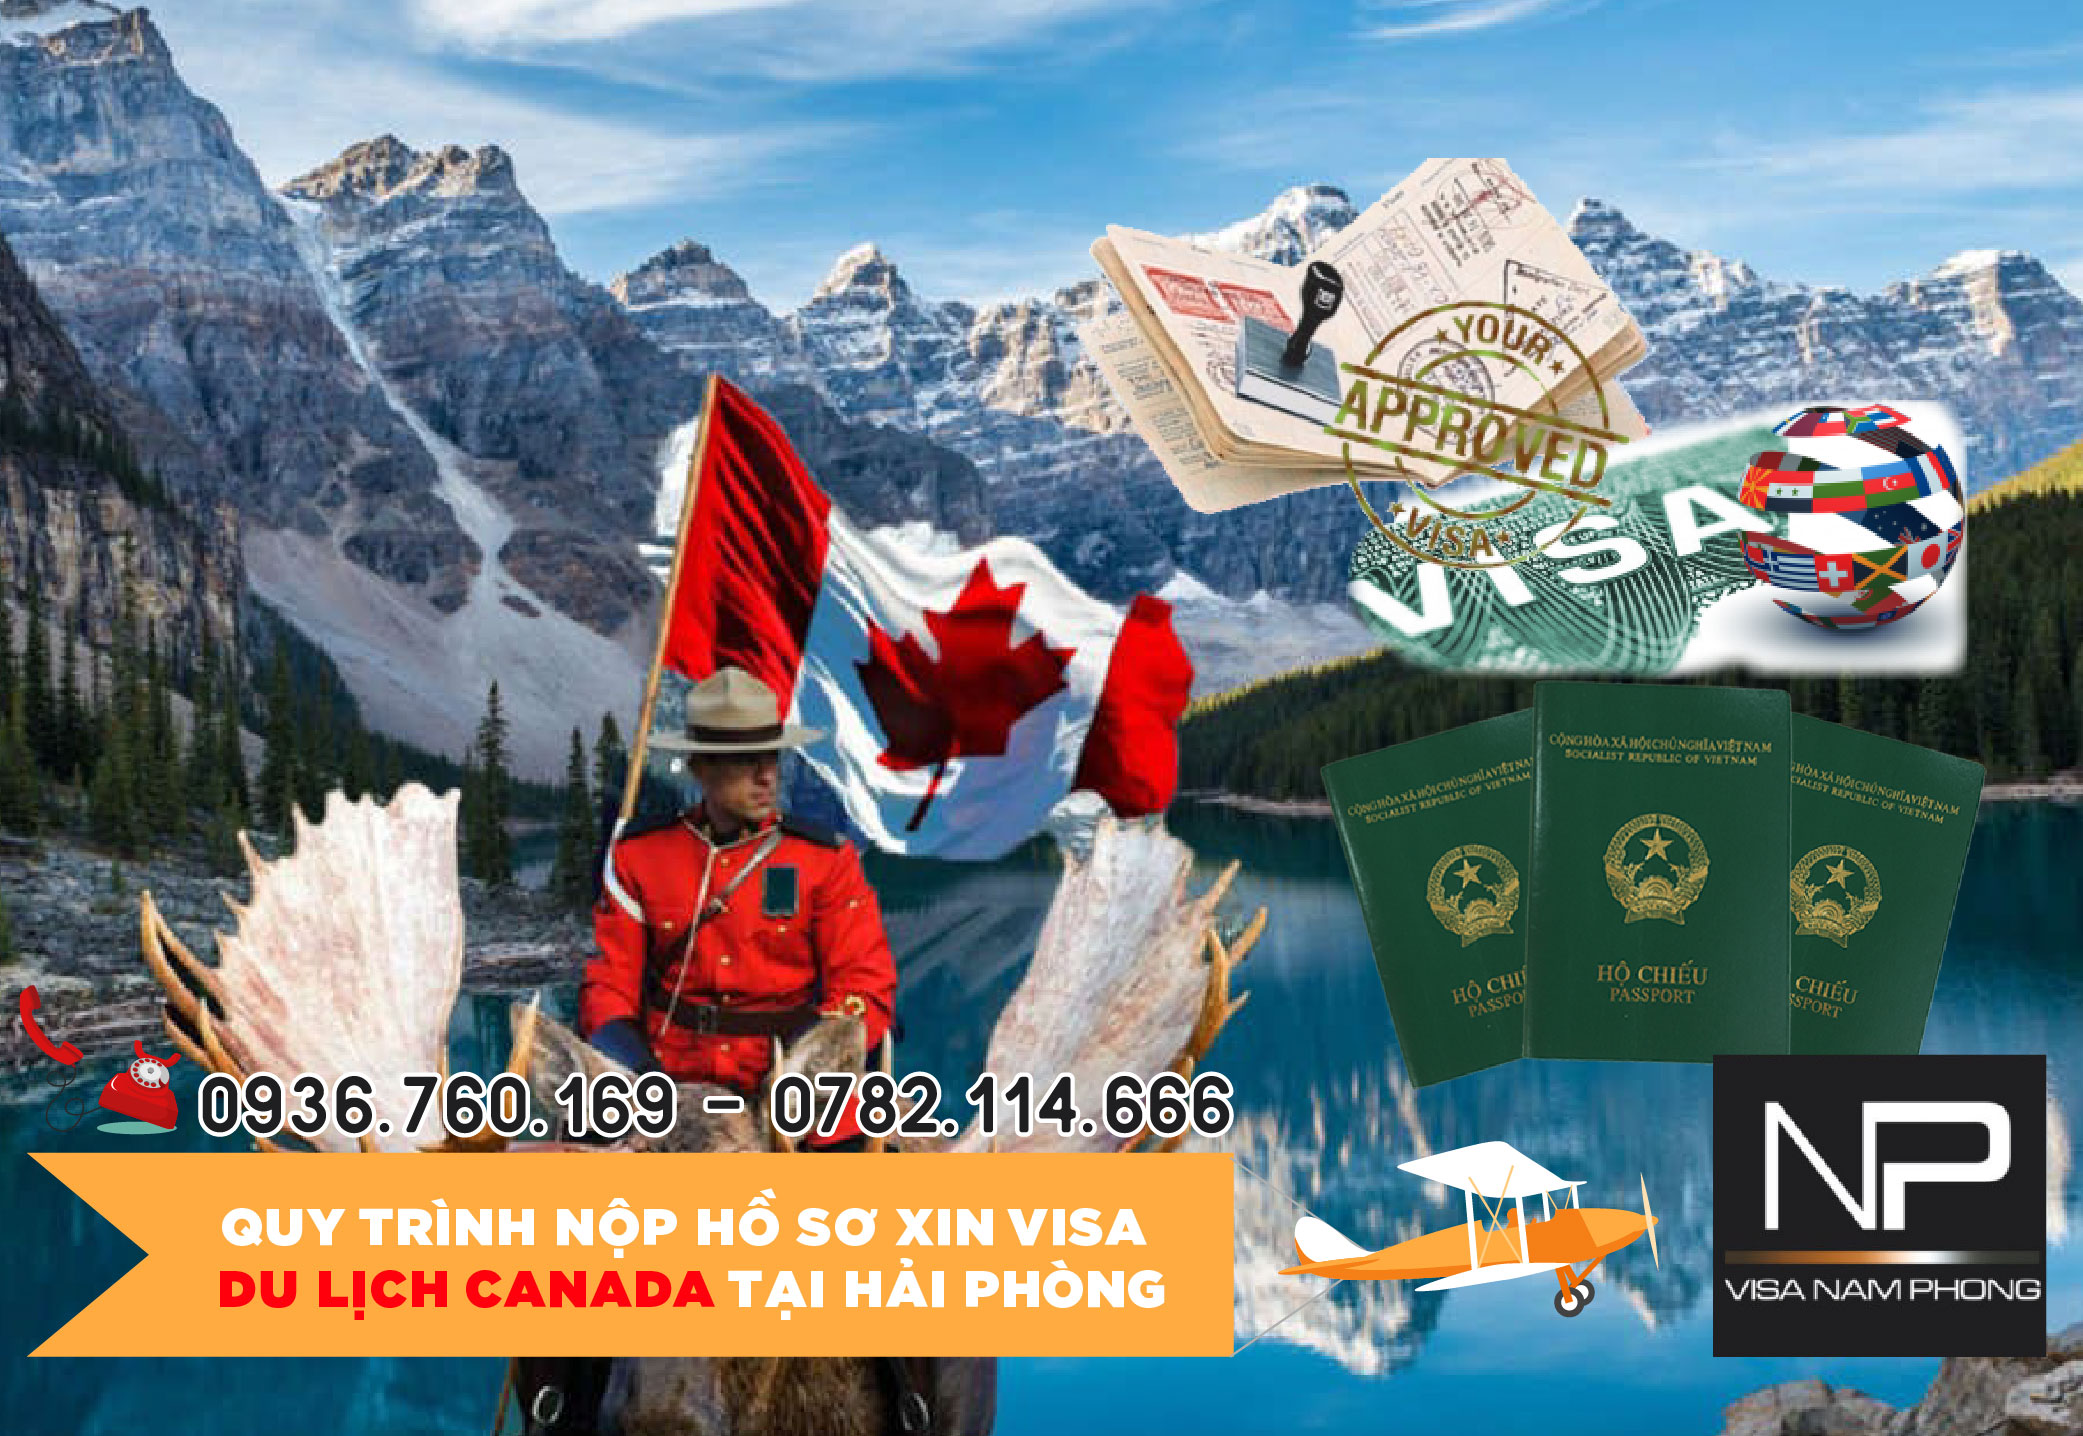 Quy trình nộp hồ sơ xin visa du lịch Canada tại Hải Phòng